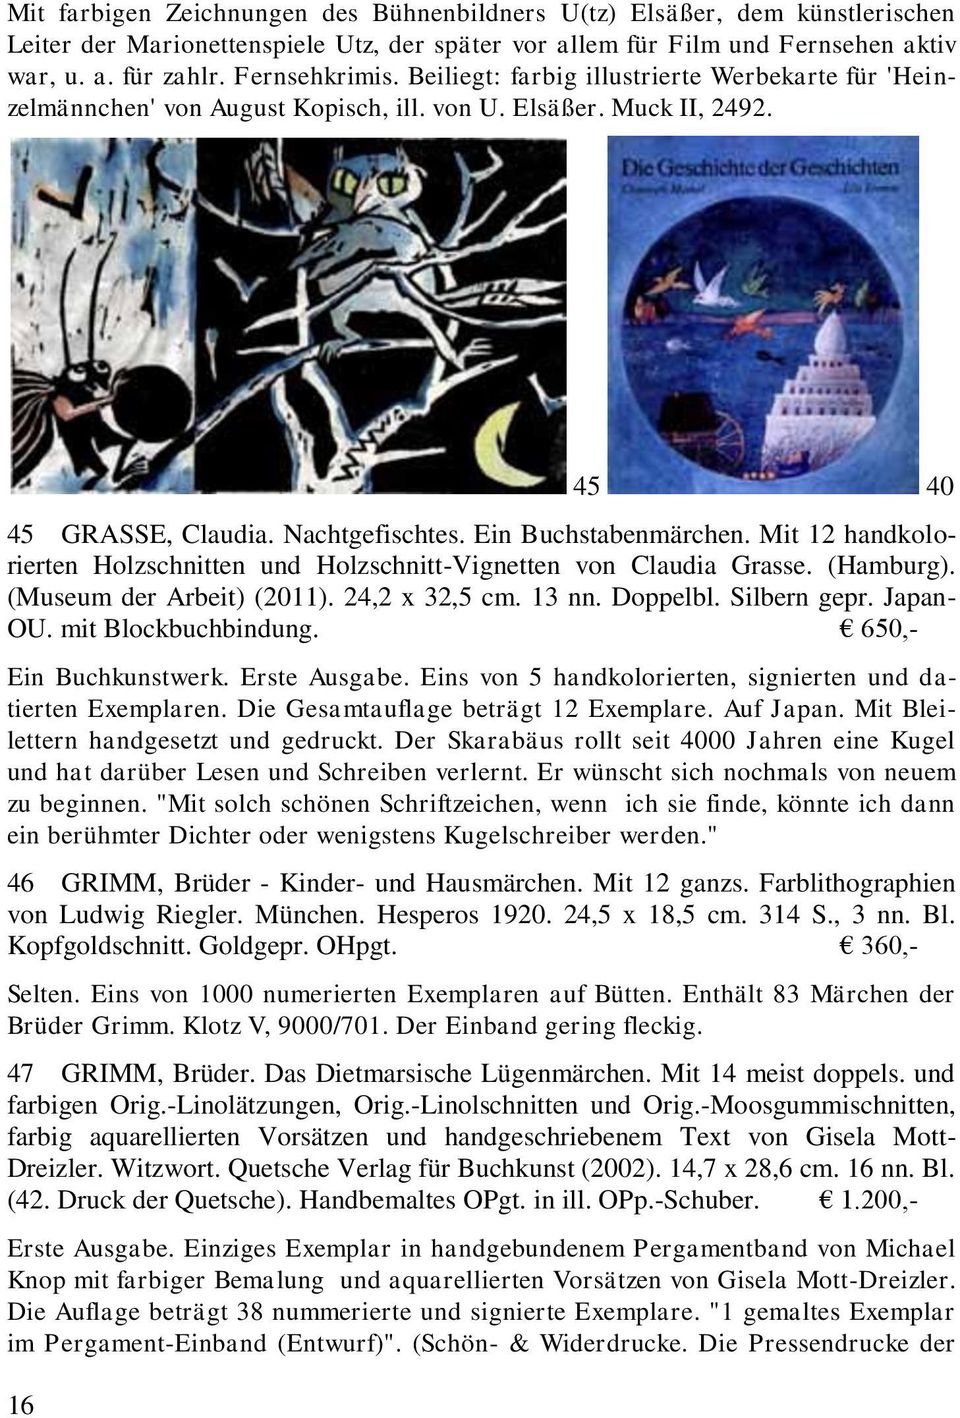 Mit 12 handkolorierten Holzschnitten und Holzschnitt-Vignetten von Claudia Grasse. (Hamburg). (Museum der Arbeit) (2011). 24,2 x 32,5 cm. 13 nn. Doppelbl. Silbern gepr. Japan- OU.